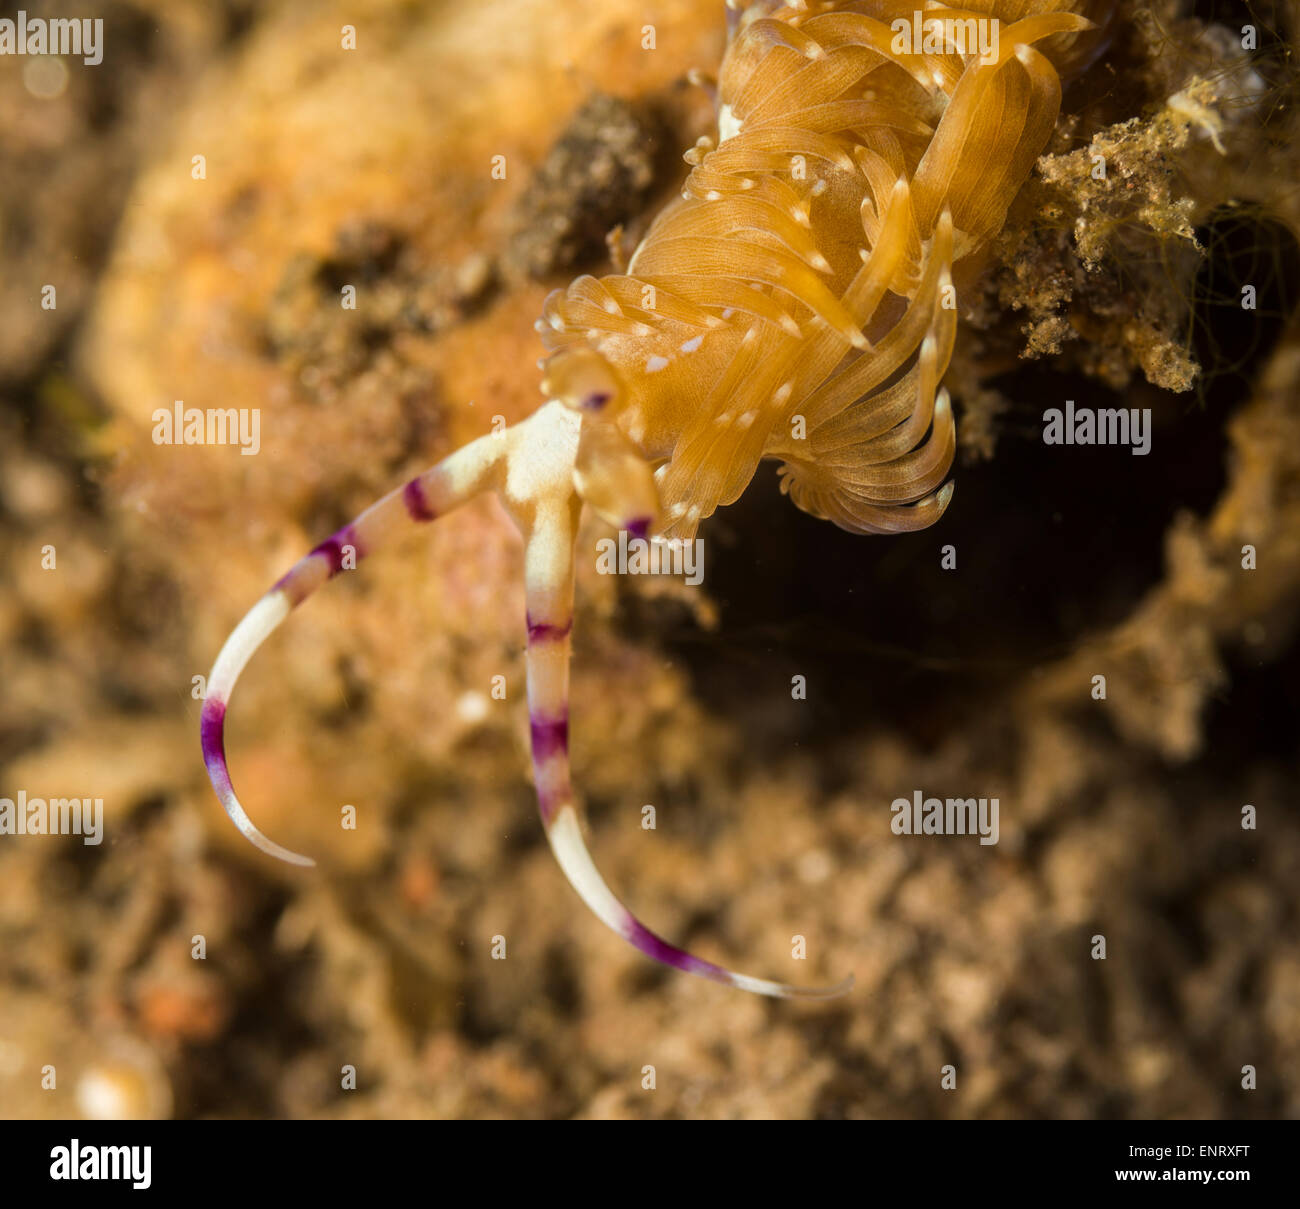 Serpente nudibranch sul fondo del mare Foto Stock